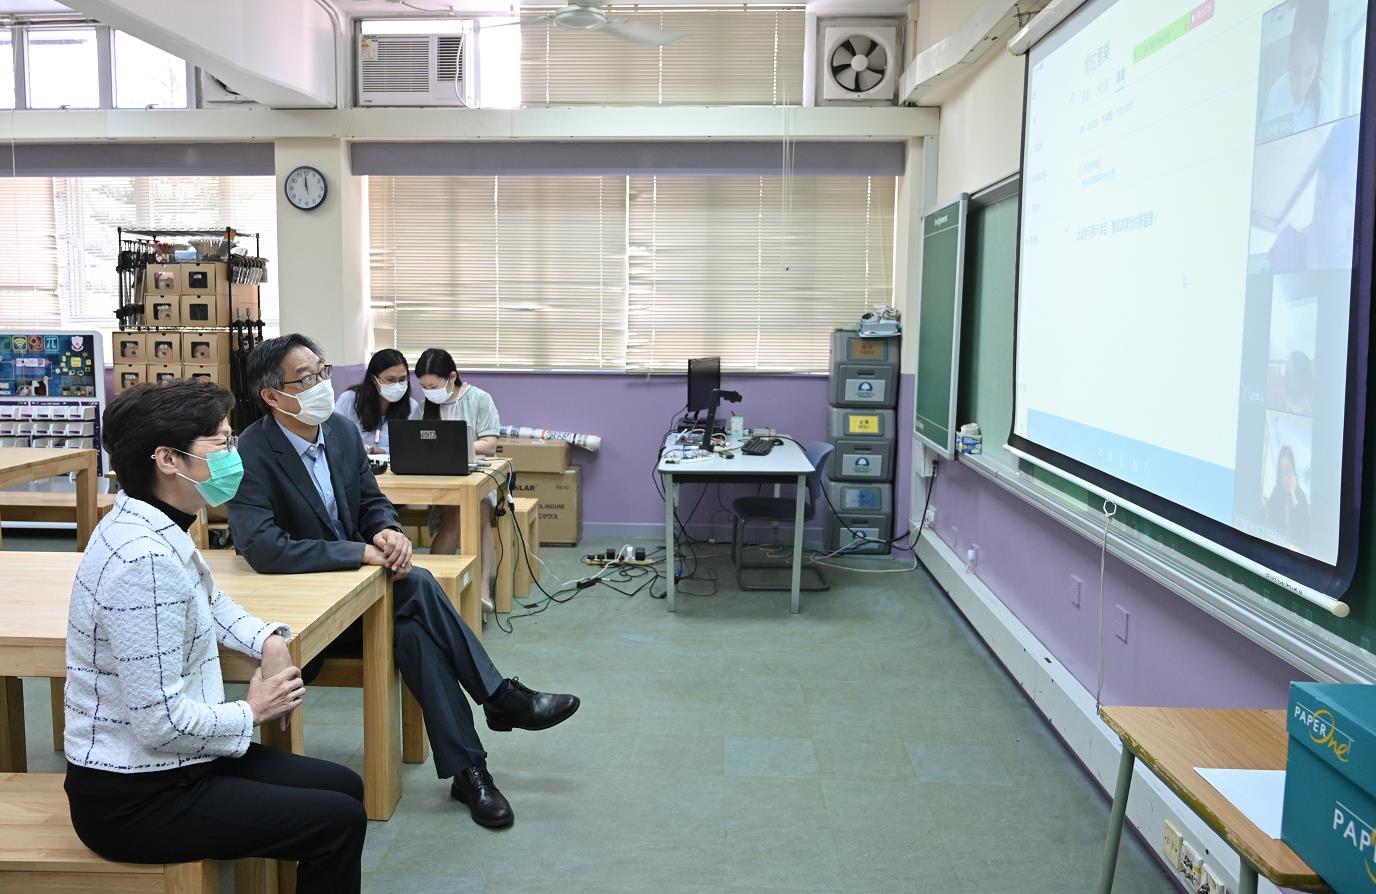 林鄭月娥(左一)視察該校老師透過網上視訊會議軟件與中六學生進行實時上課。政府新聞處圖片